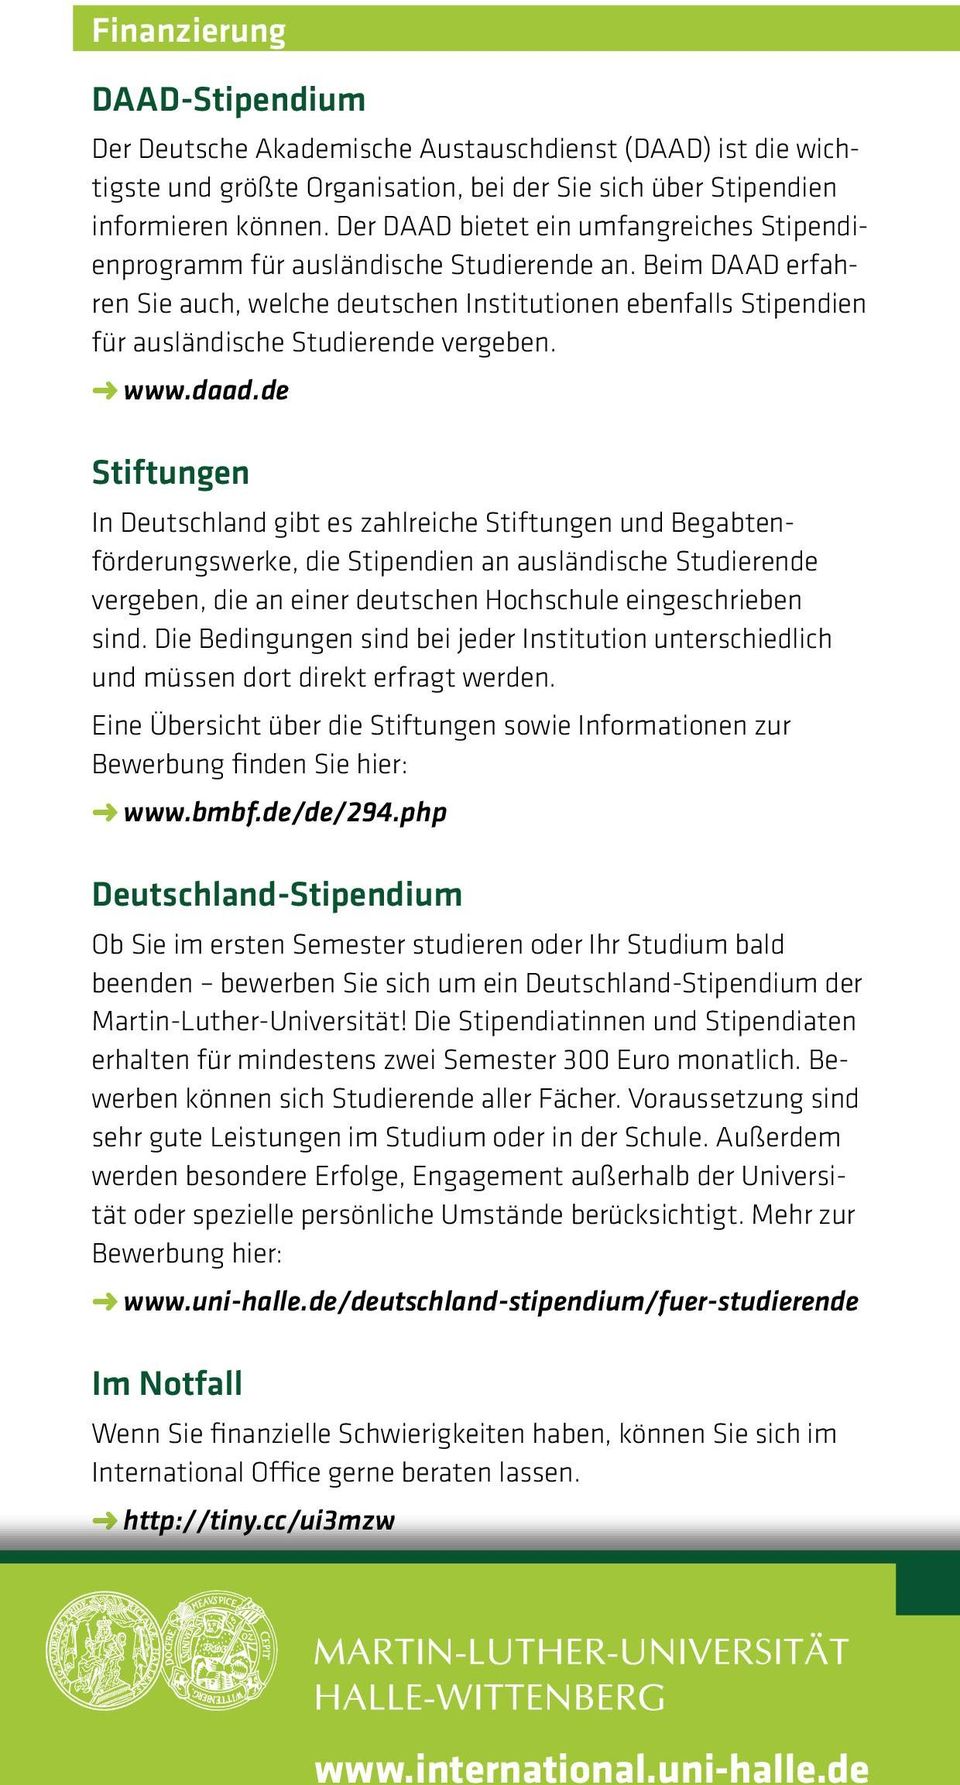 Beim DAAD erfahren Sie auch, welche deutschen Institutionen ebenfalls Stipendien für ausländische Studierende vergeben. www.daad.